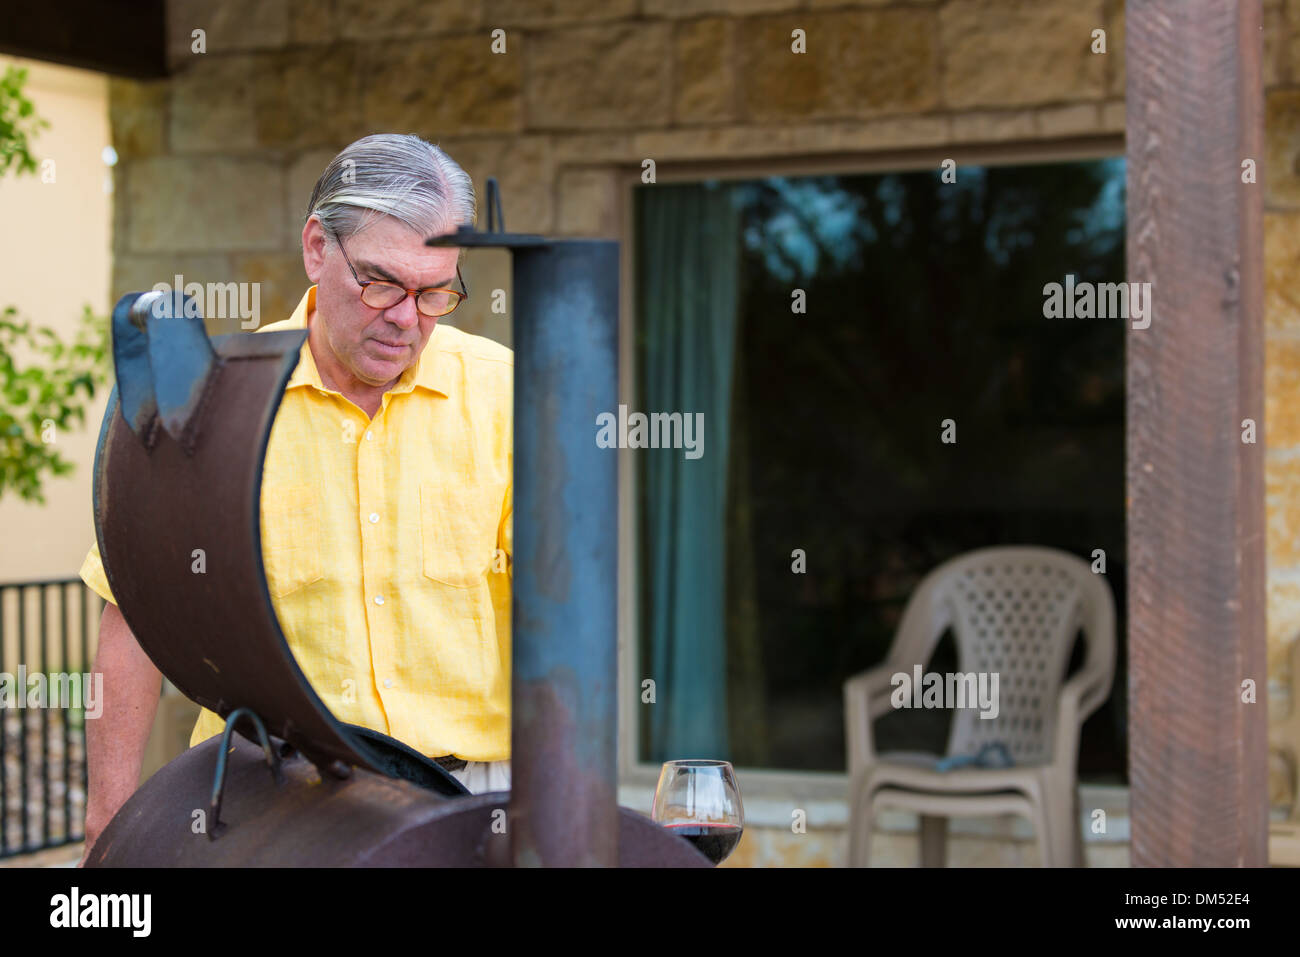 Voce maschile senior citizen di etnia caucasica, 60 anni, sta preparando il barbecue smoker pit per grigliare. Texas, Stati Uniti d'America Foto Stock